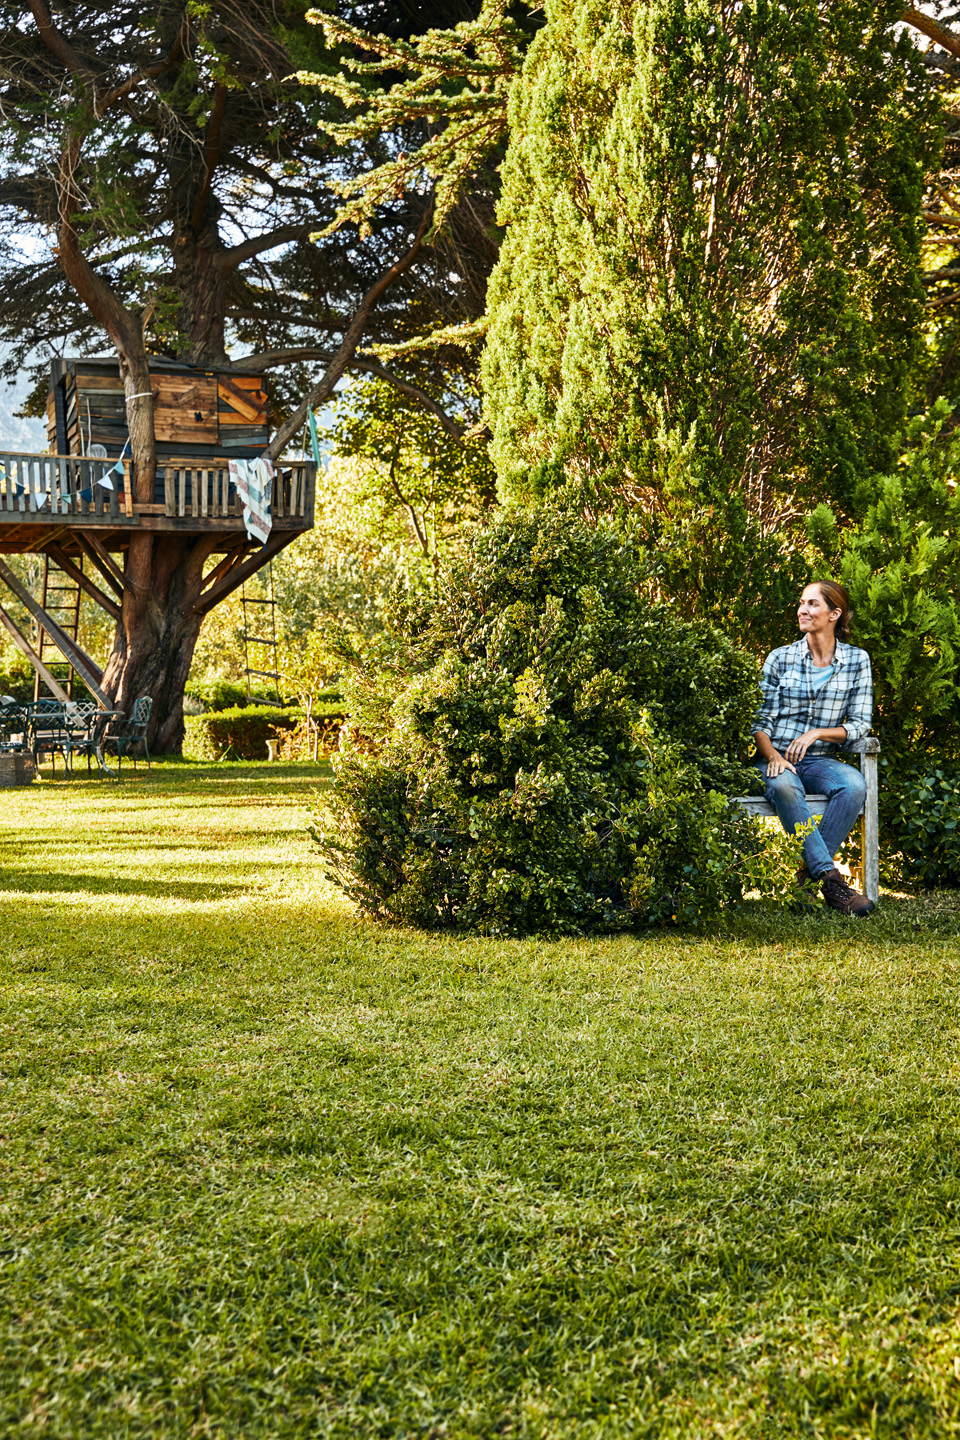  Een vrouw zit op een bankje in een tuin met struiken en gazon, met een boomhut op de achtergrond.